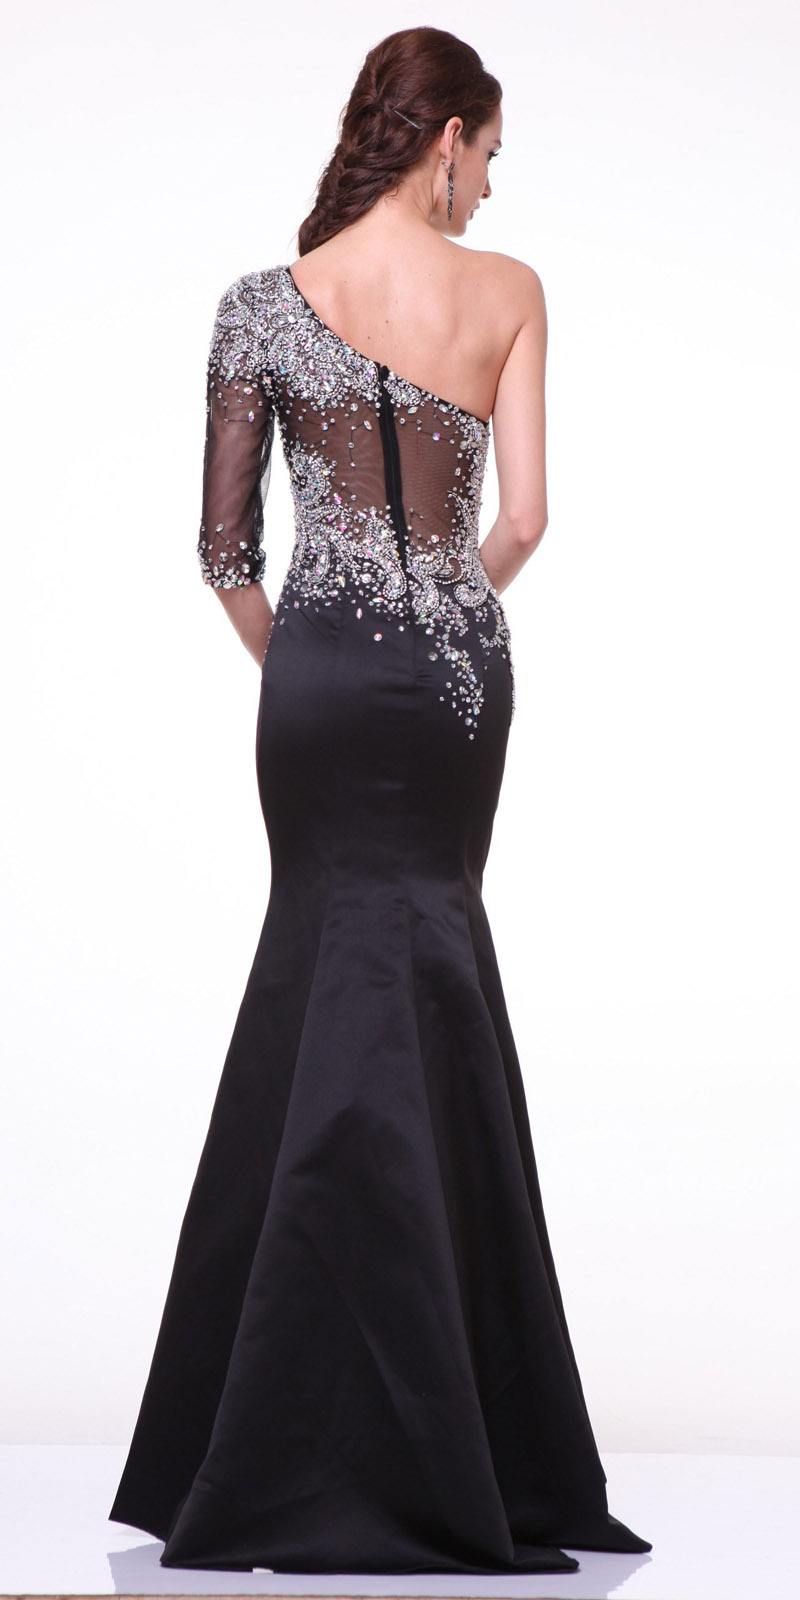 Formal Black Mermaid Dress One Shoulder Sleeve Embellished Sheer Bodice